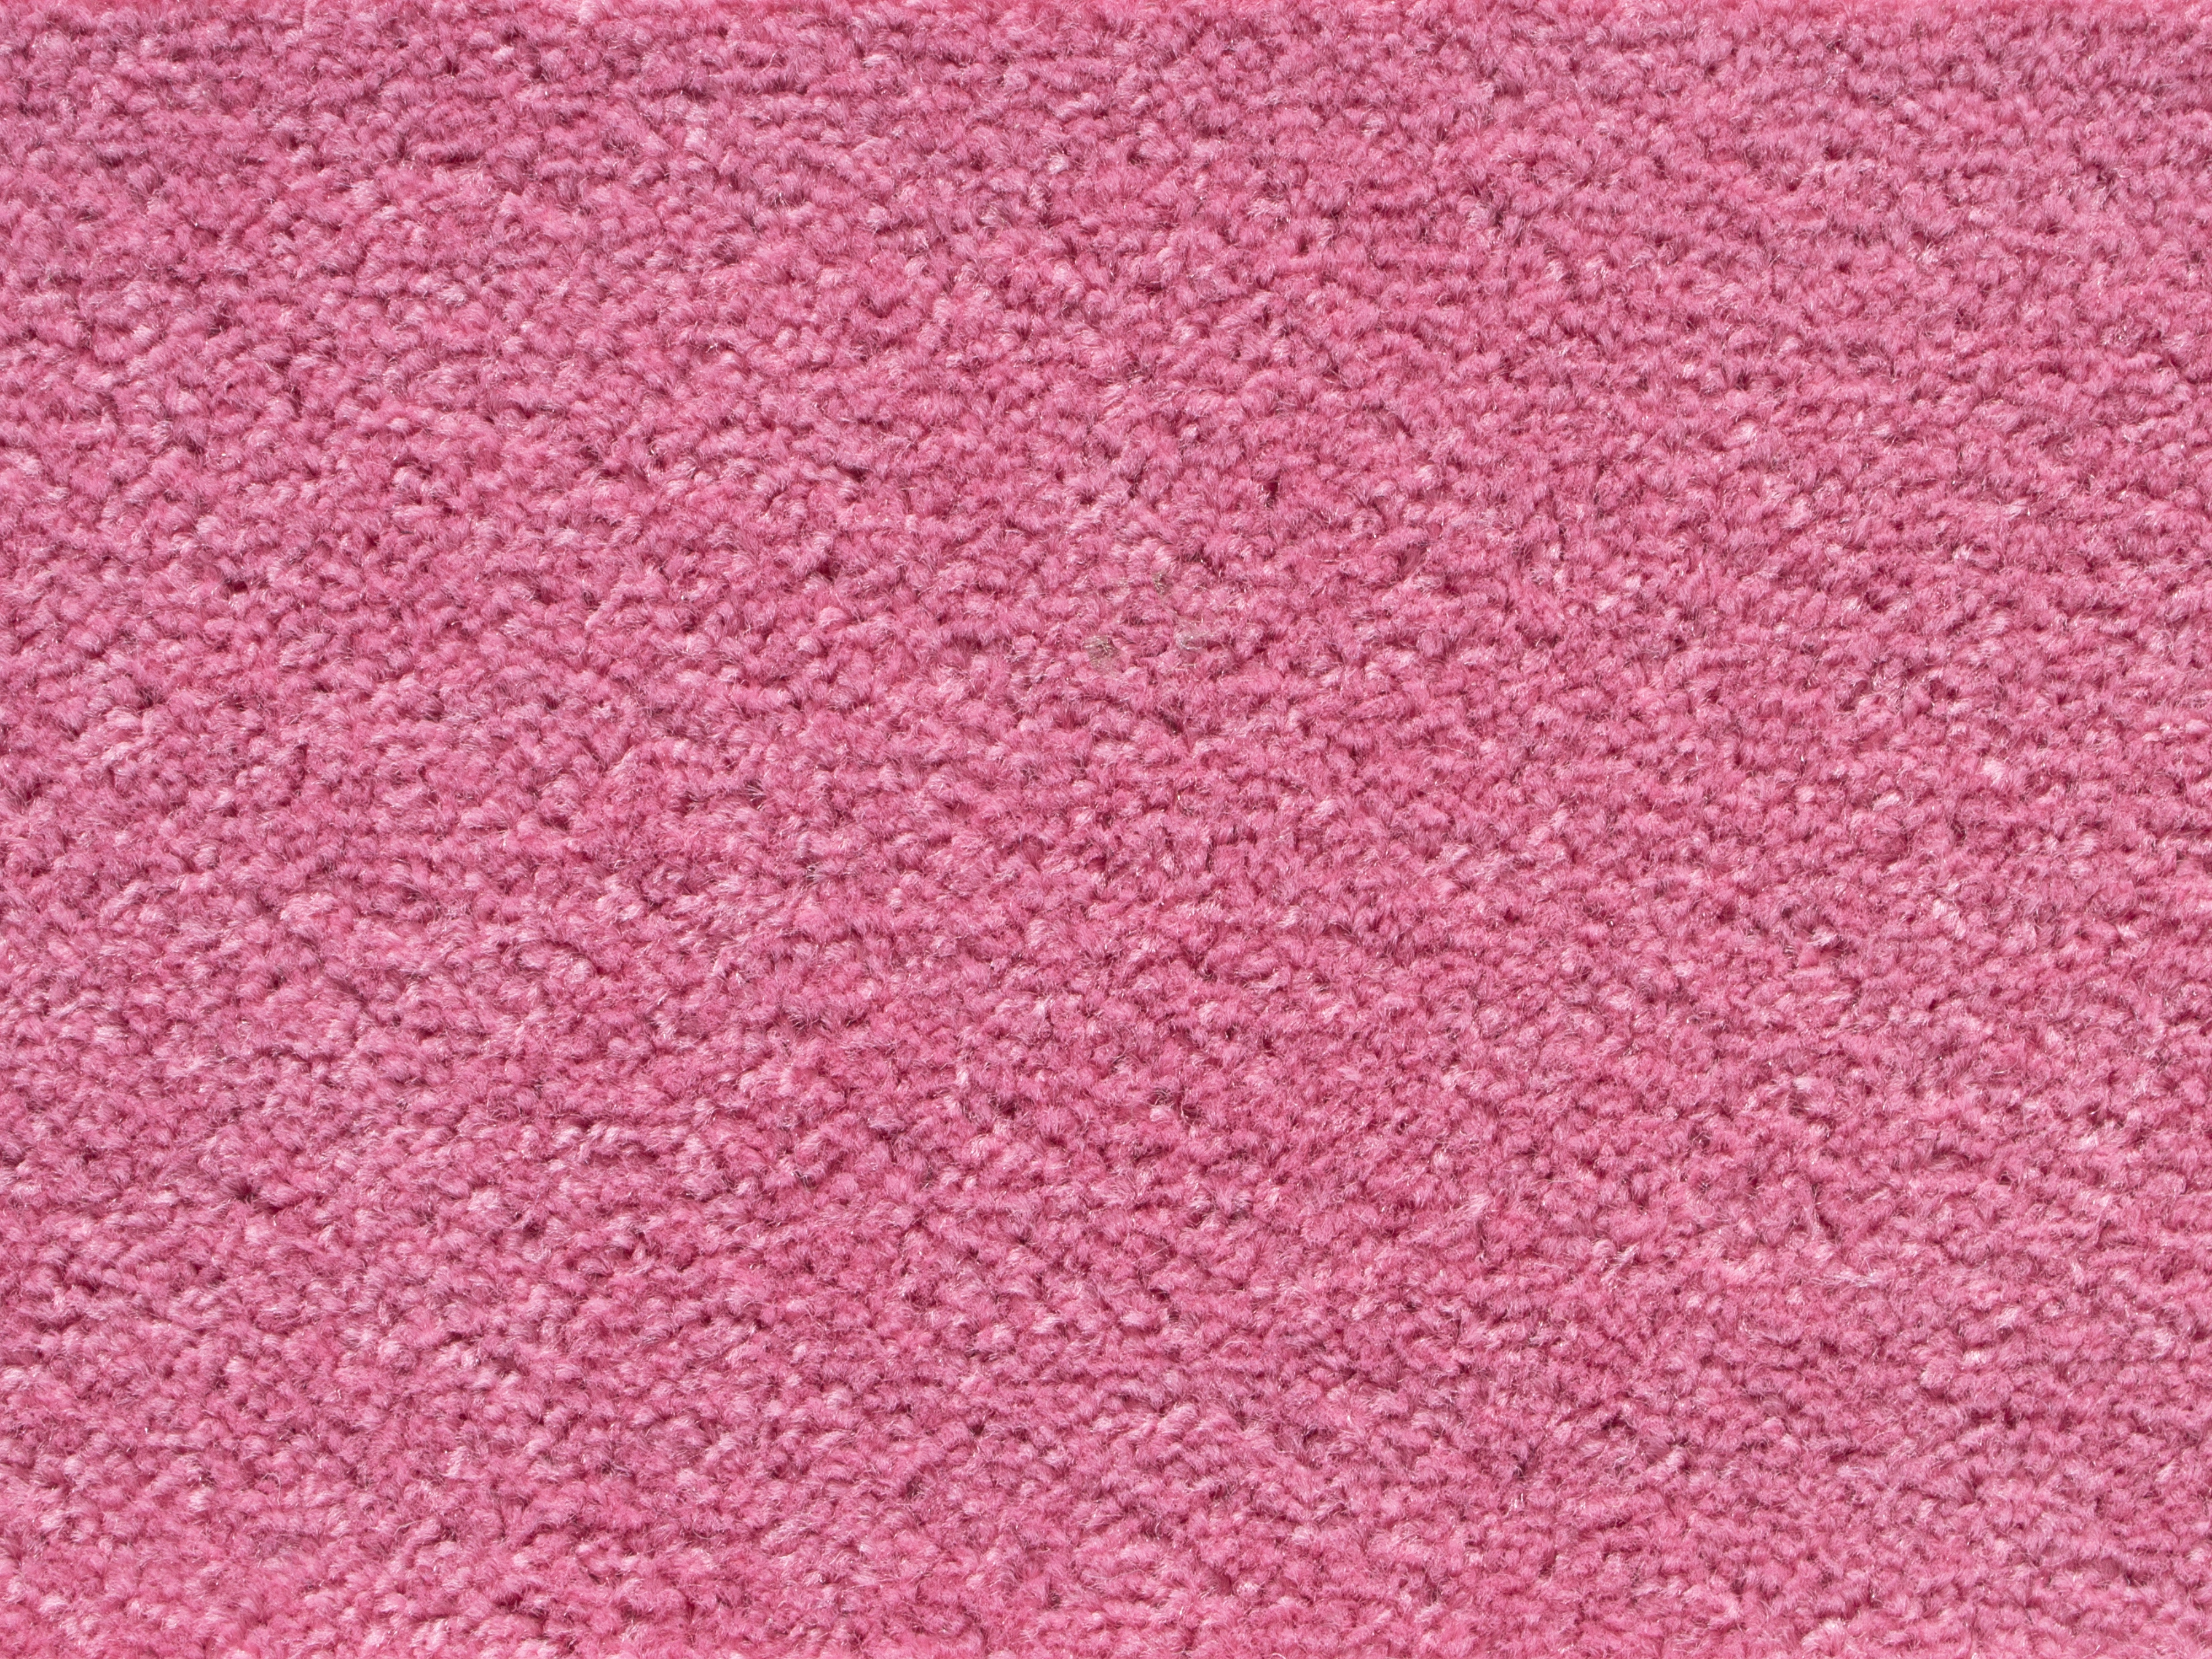 Teppichboden Lisa Pink 400 cm breit kaufen bei OBI